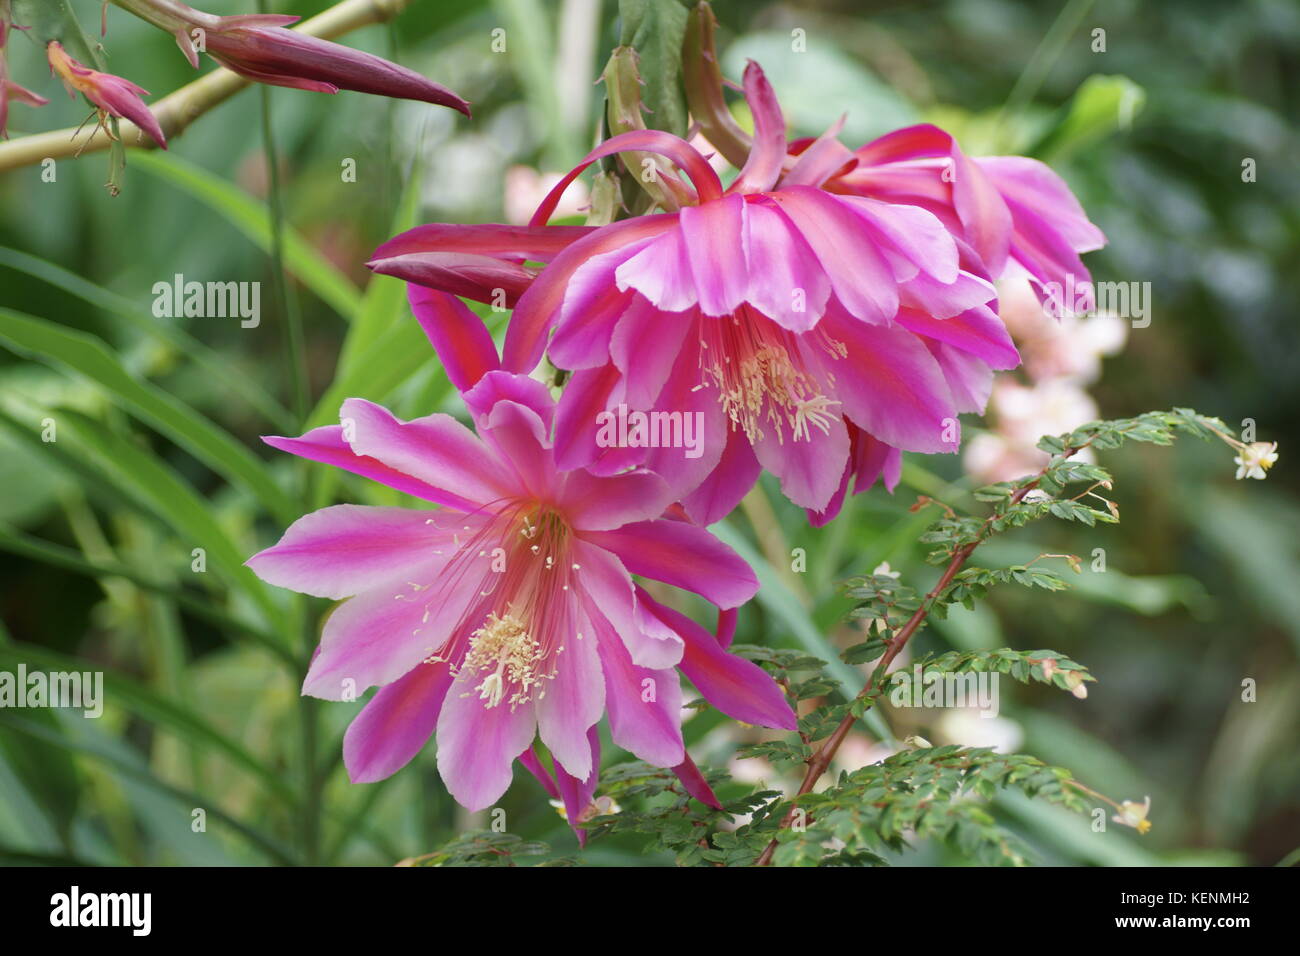 Epiphyllum Hybrid Stock Photo